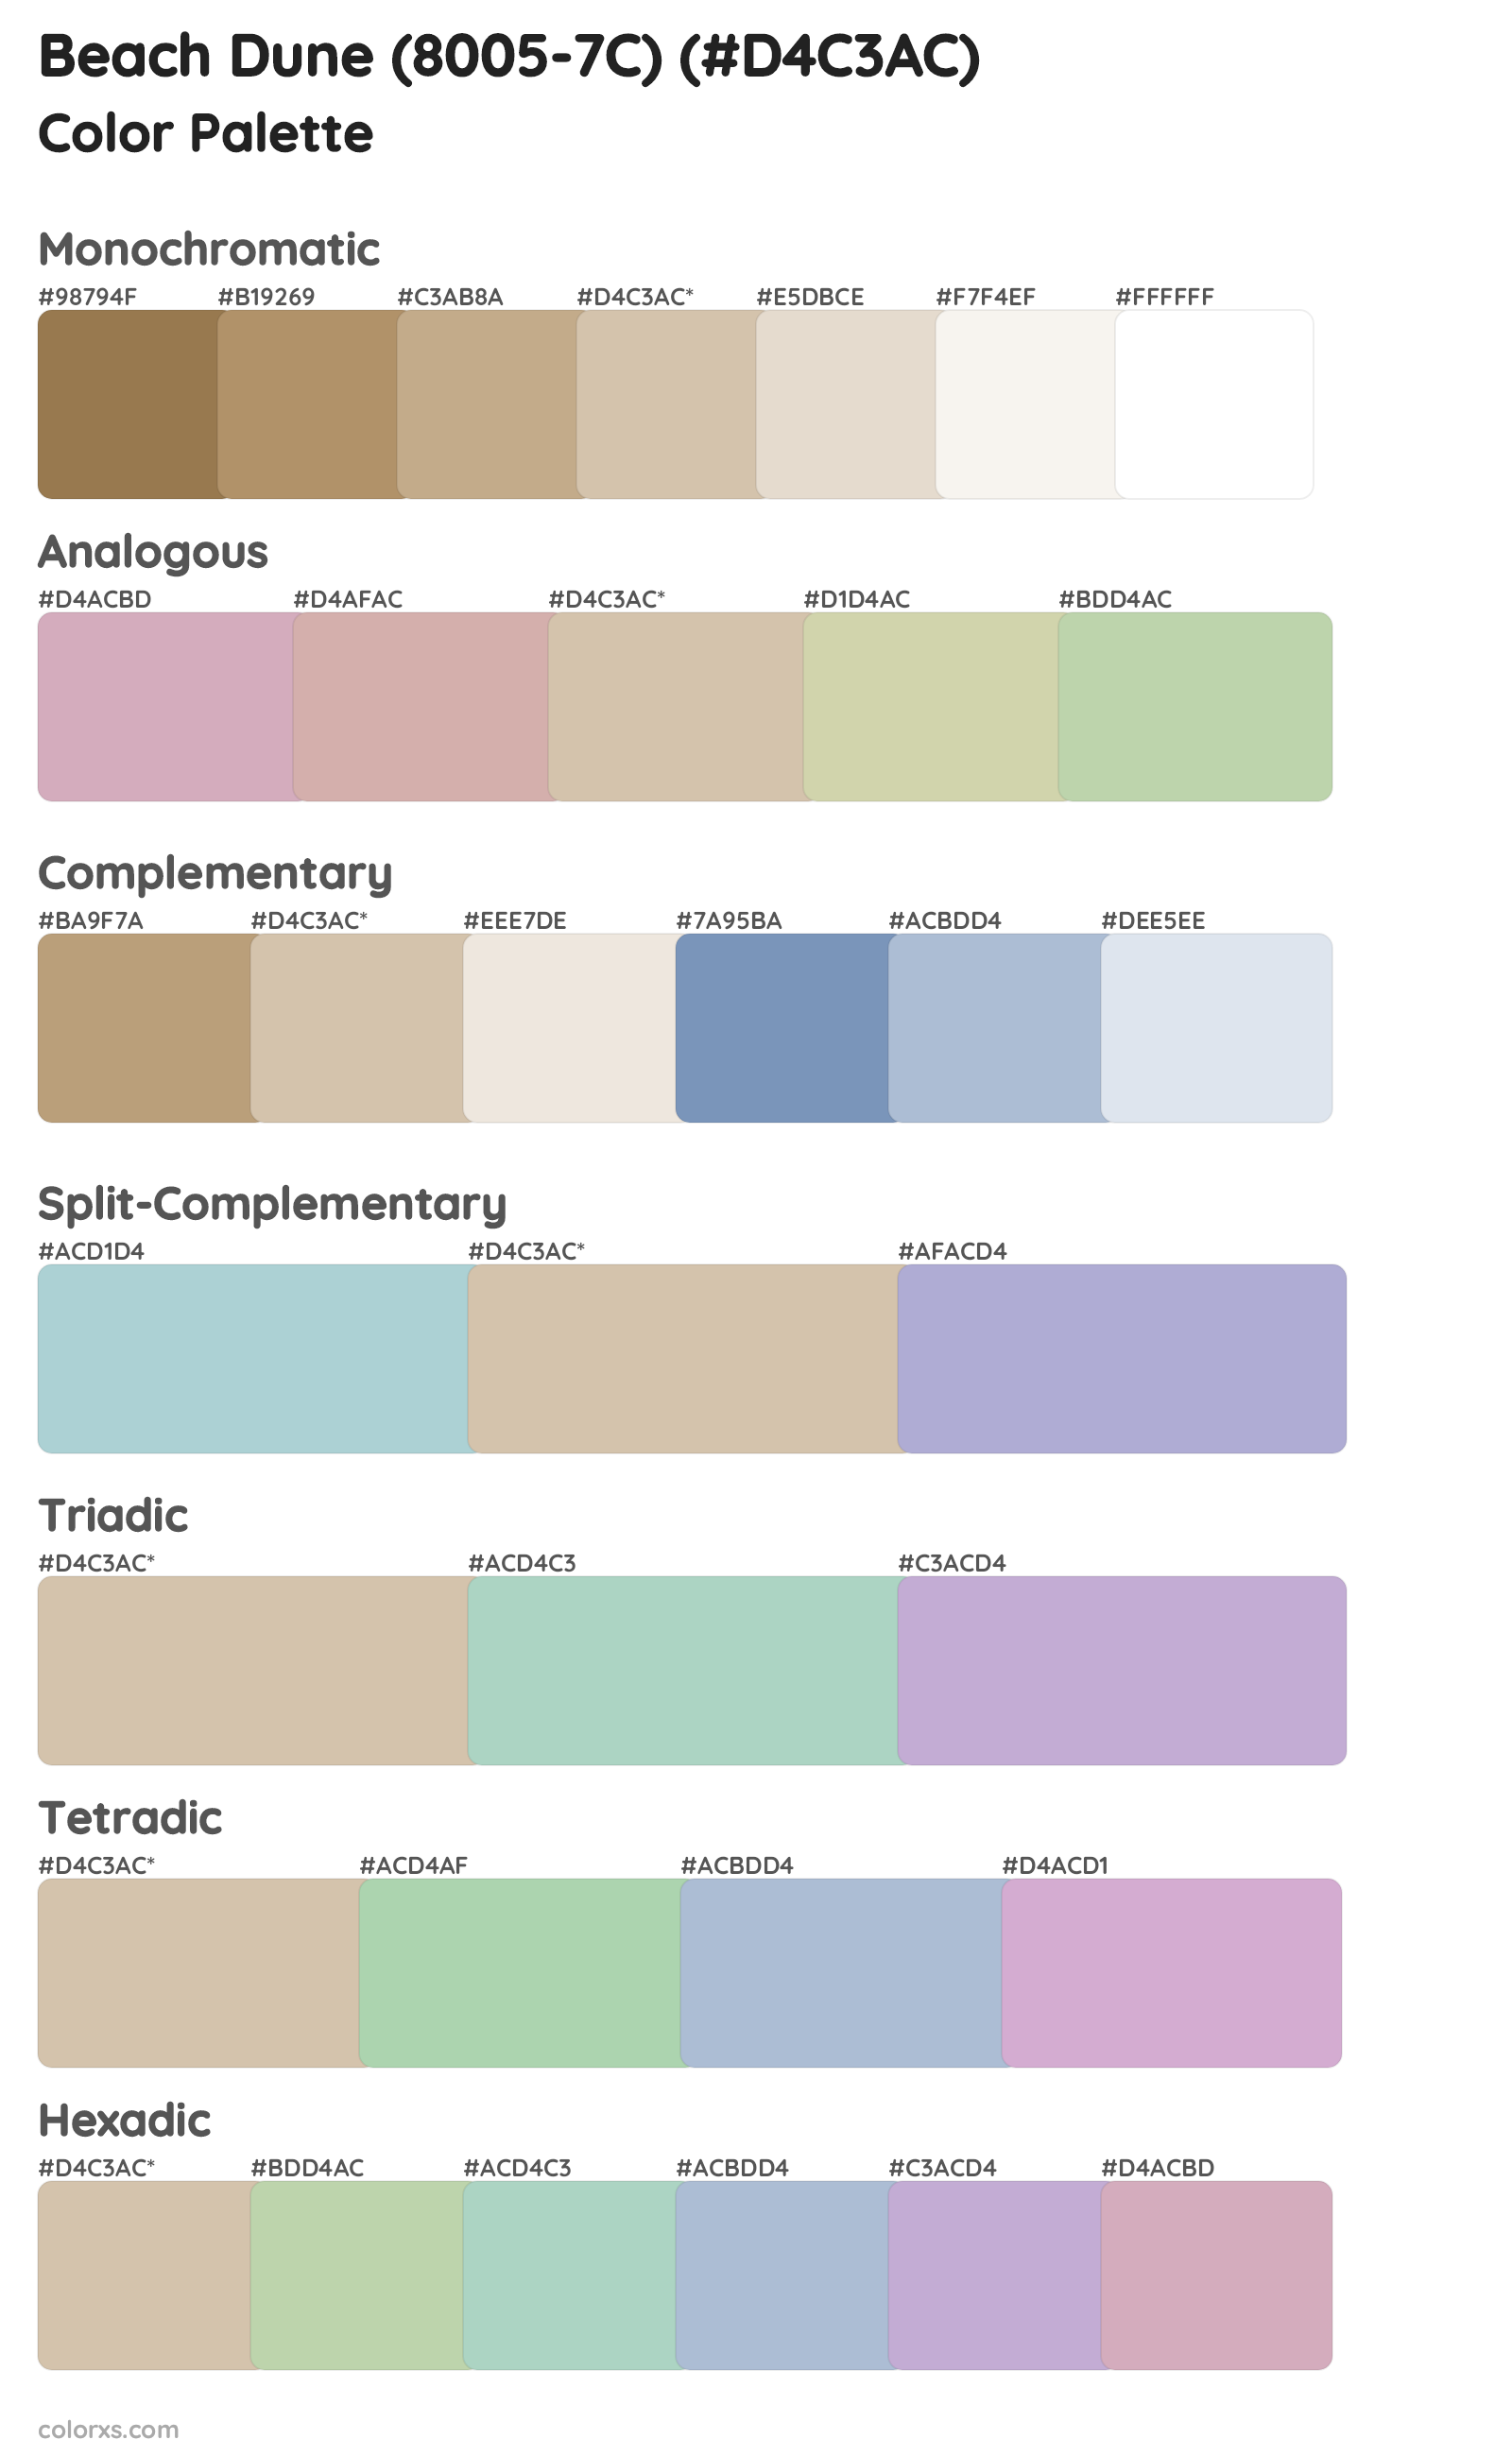 Beach Dune (8005-7C) Color Scheme Palettes